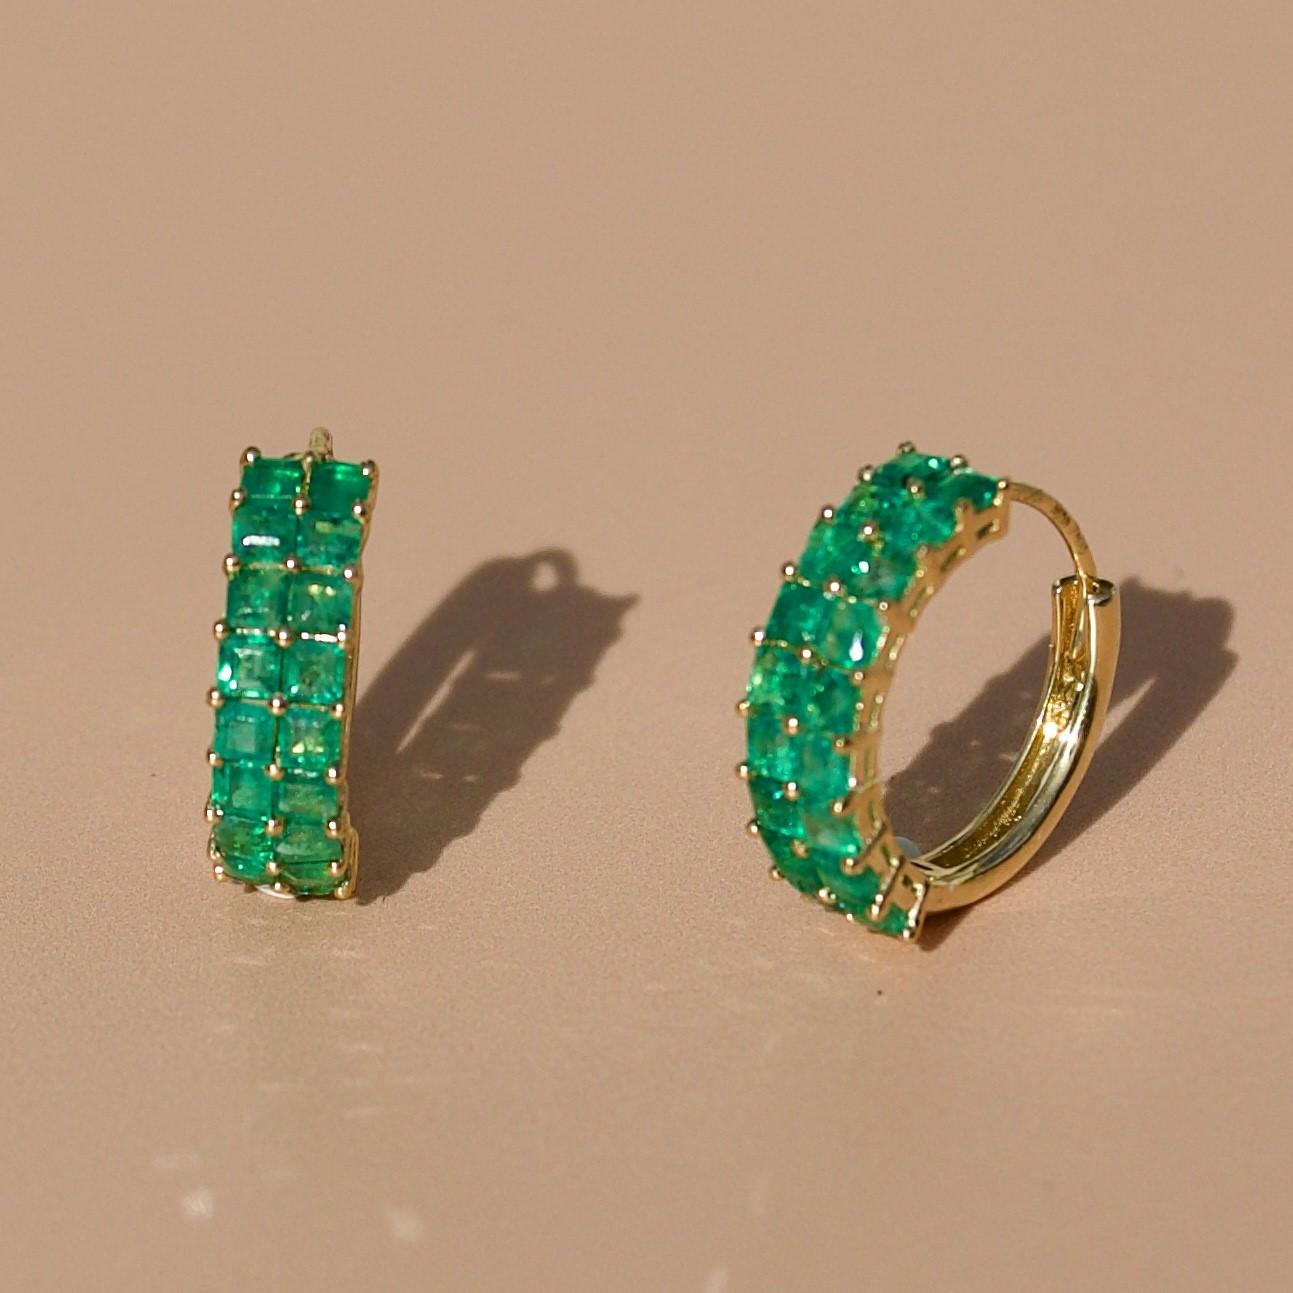 Entdecken Sie die Nina Zhou Emerald Hoop Earrings mit barocken Perlenverzierungen aus 18k Gelbgold. Diese Ohrringe vereinen den ruhigen Glanz von Perlen mit dem zeitlosen Funkeln von Smaragden in einem zarten, klassischen Reifendesign. Die